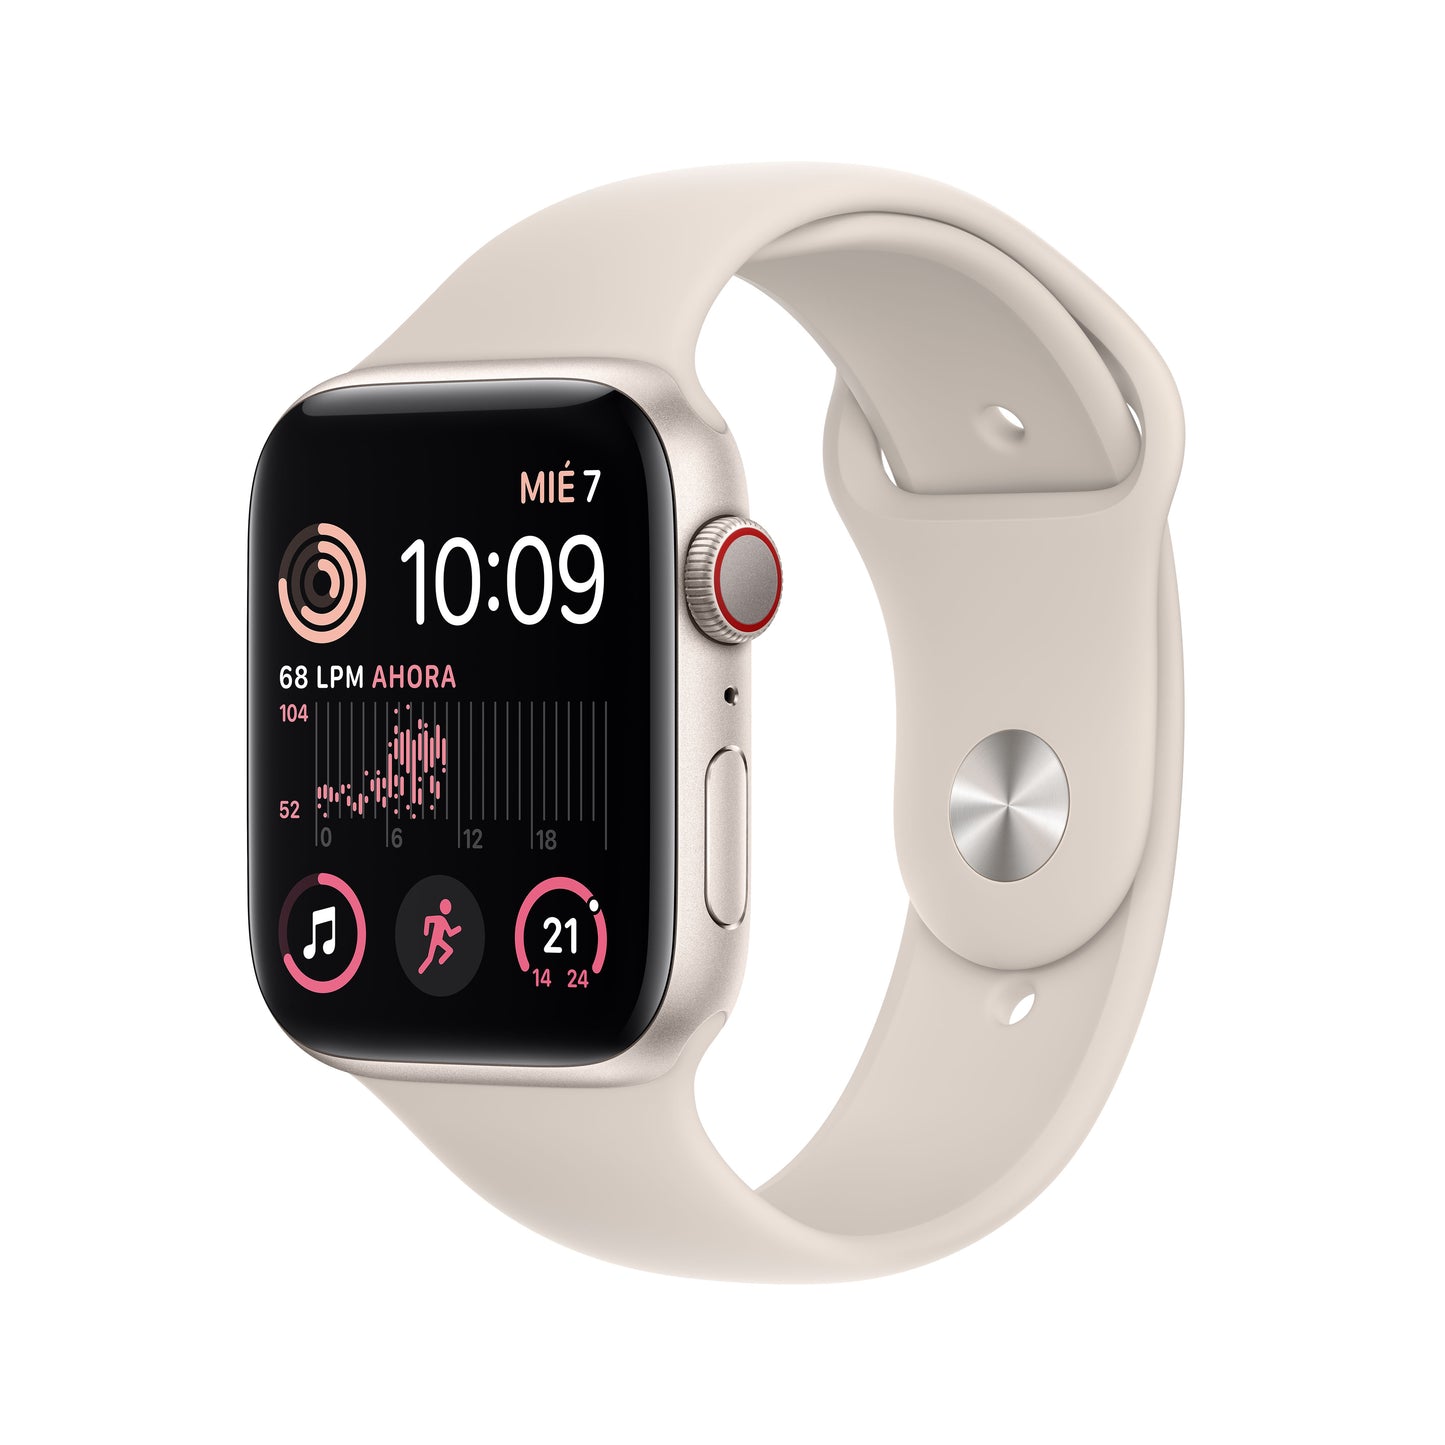 Apple Watch SE (GPS + Cellular) - Caja de aluminio en blanco estrella de 44 mm - Correa deportiva blanco estrella - Talla única